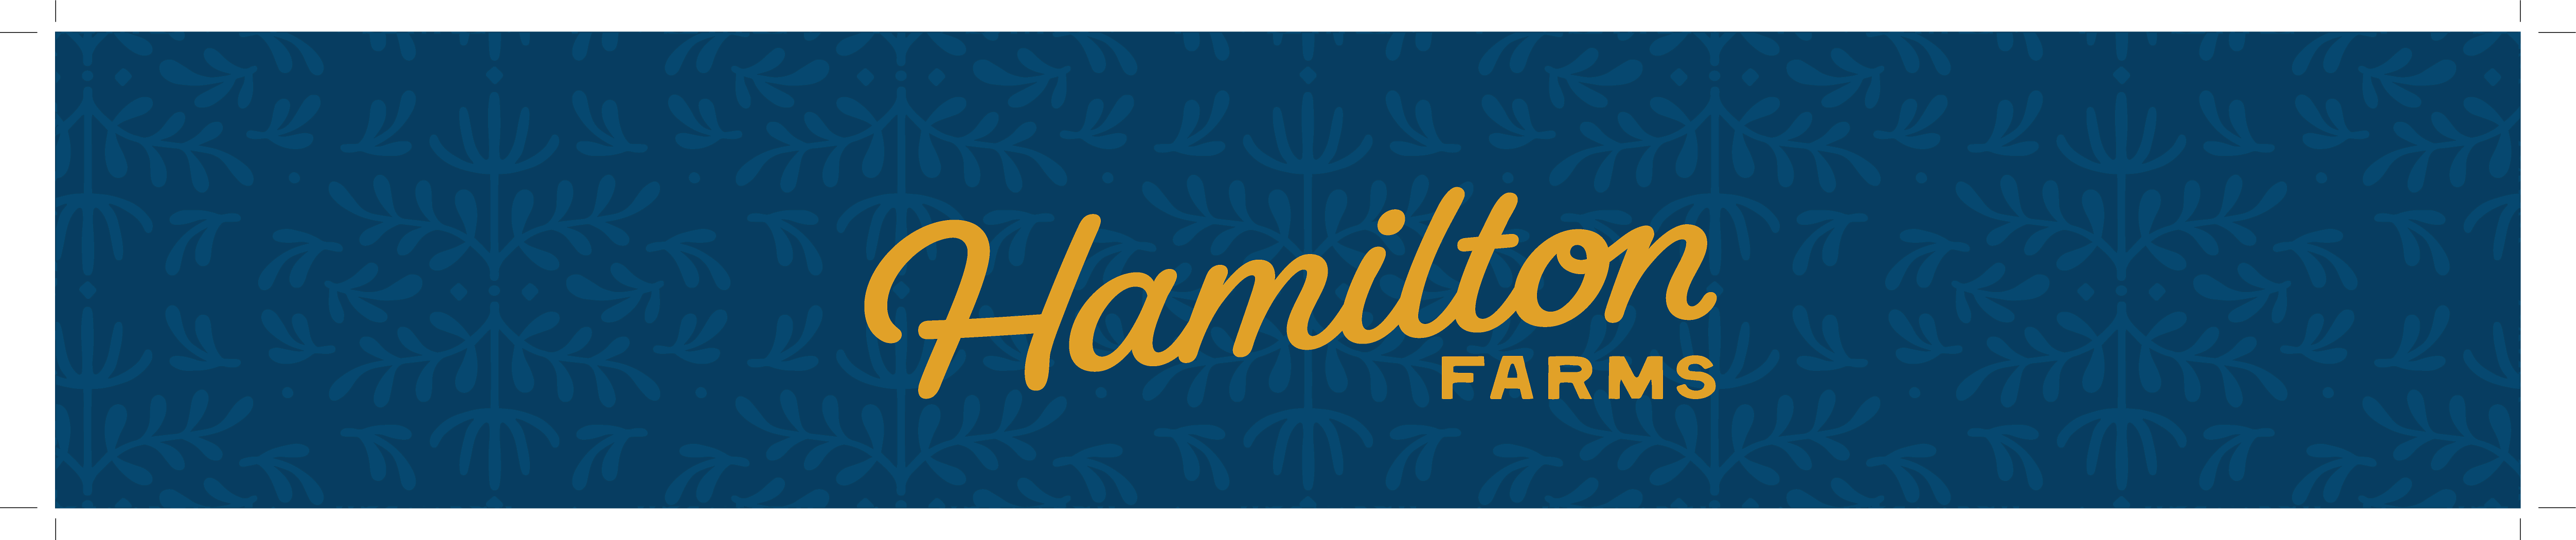 Hamilton Farms culture